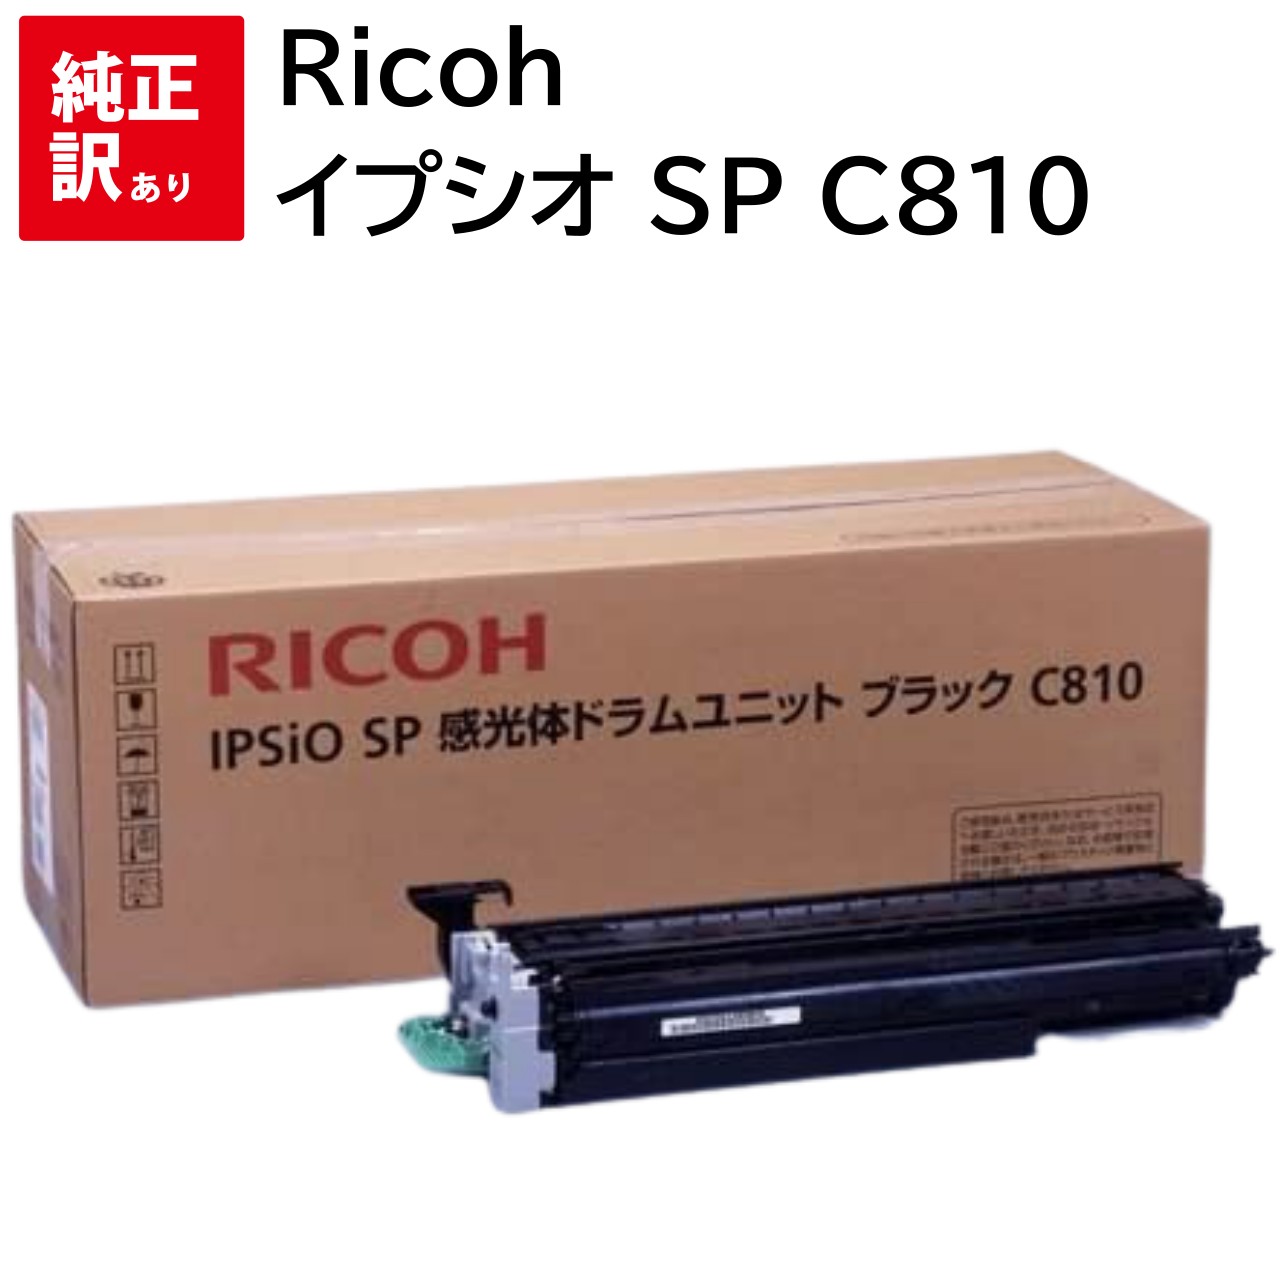 訳あり 新品 メーカー 純正 リコー RICOH 515265 感光体 ドラム ユニット カートリッジ IPSiO SP C810 C811 ブラック 送料無料 4961311029110 トナー